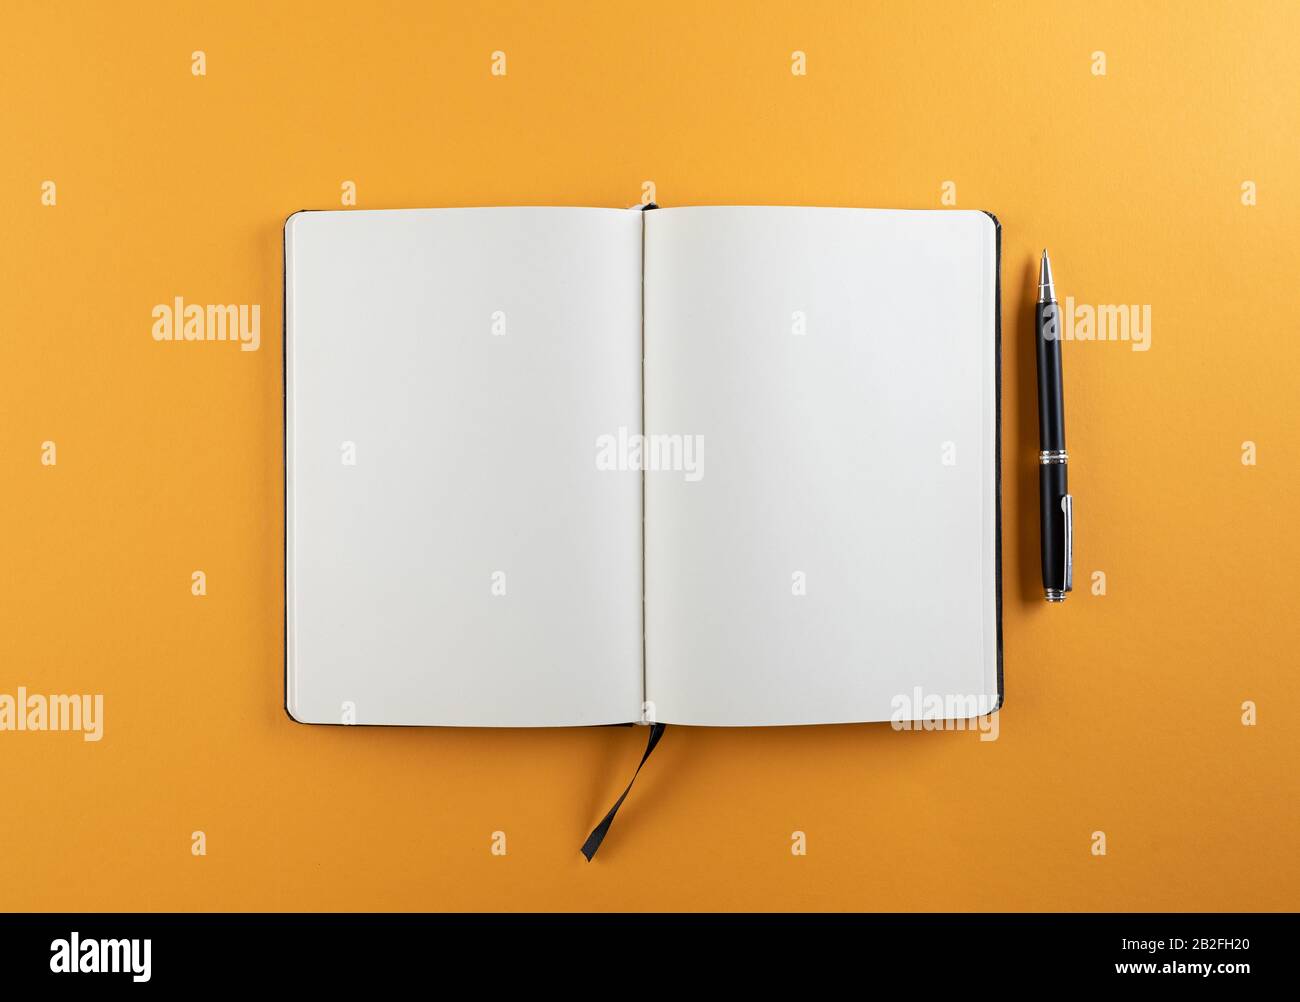 aprire il diario o il notebook con pagine bianche vuote sul modello di sfondo arancione Foto Stock